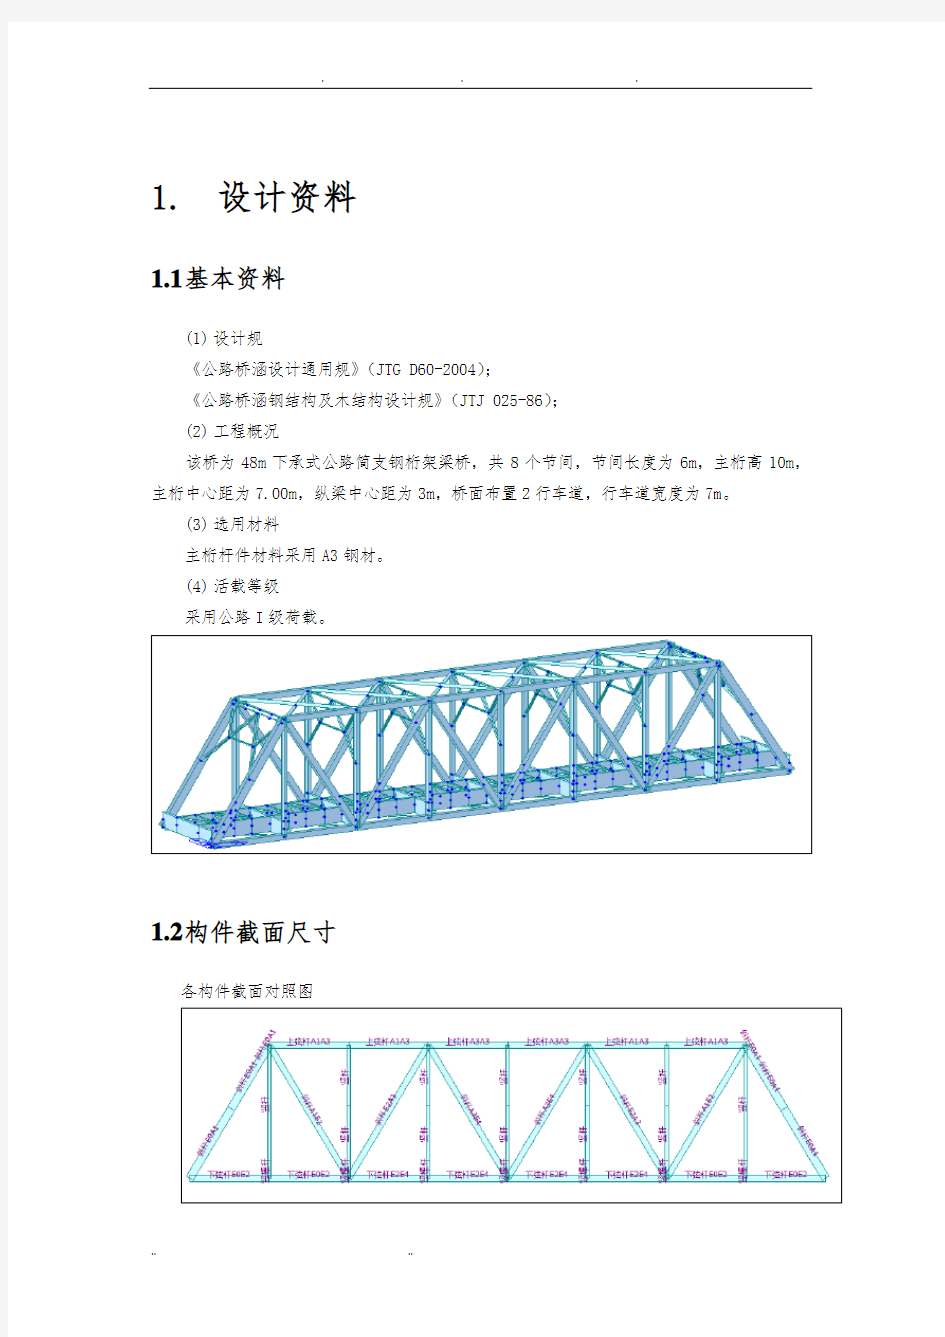 钢桁架桥计算书-毕业设计说明